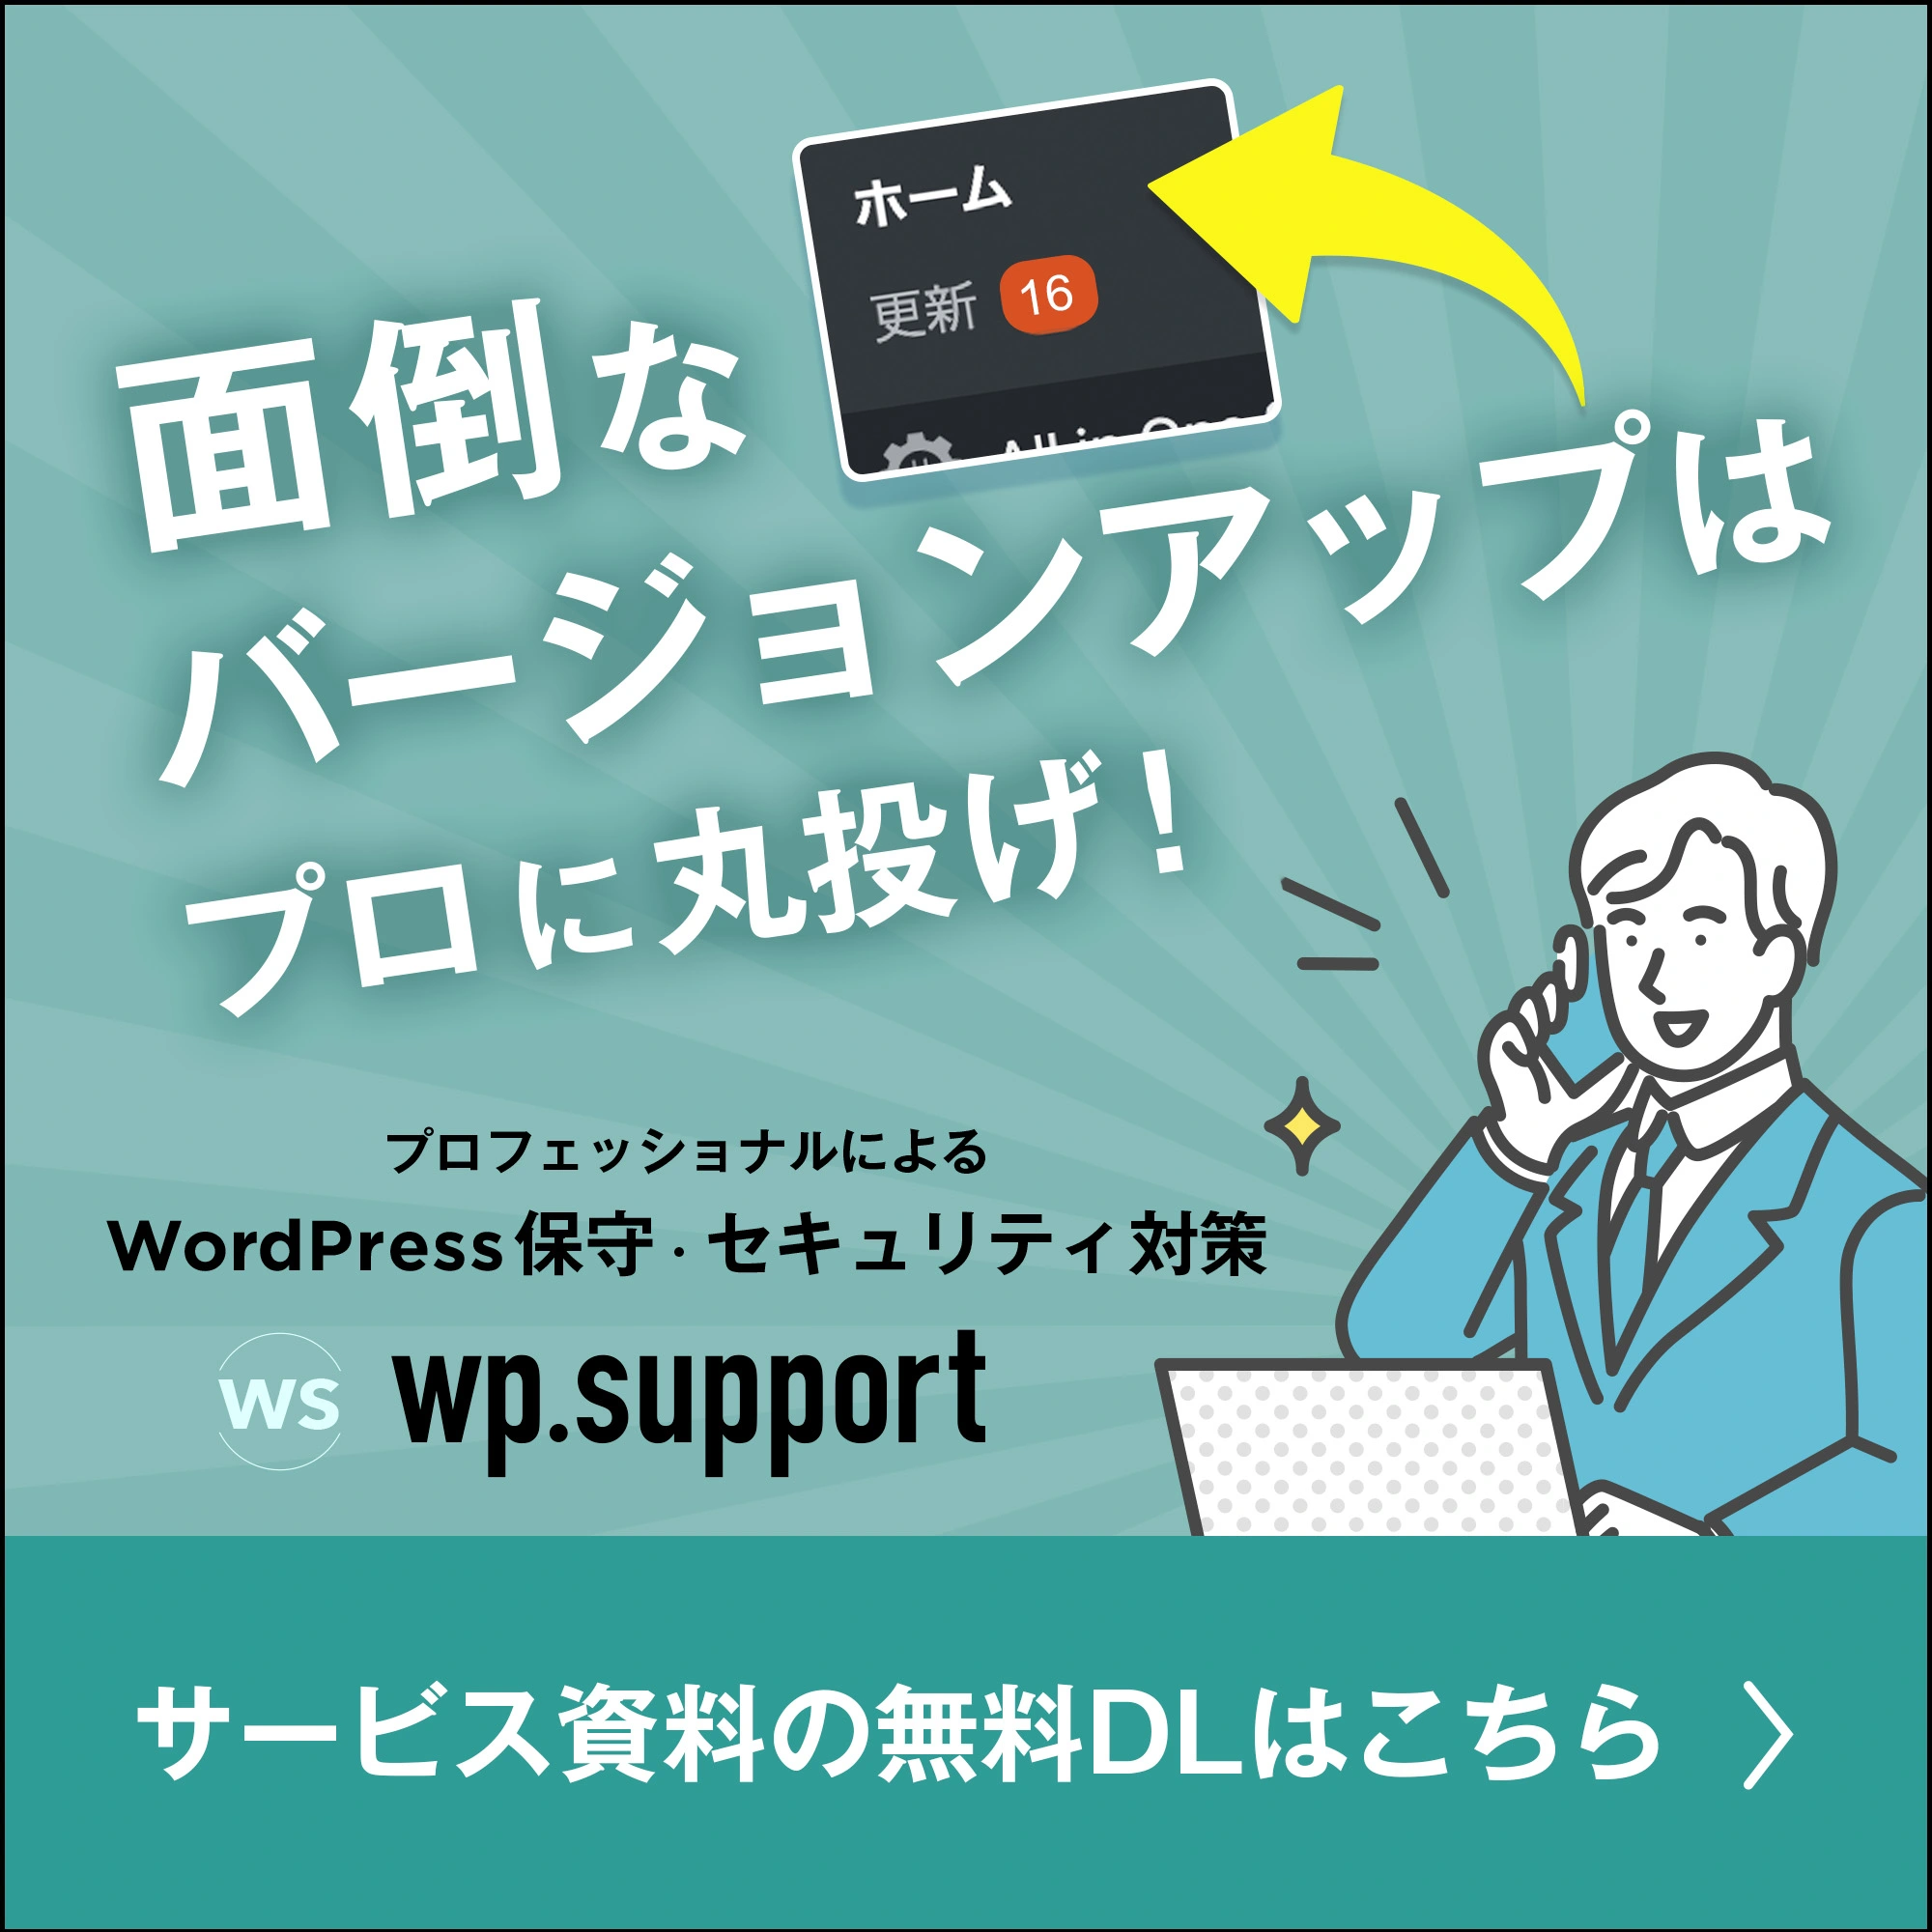 wp.support資料ダウンロード